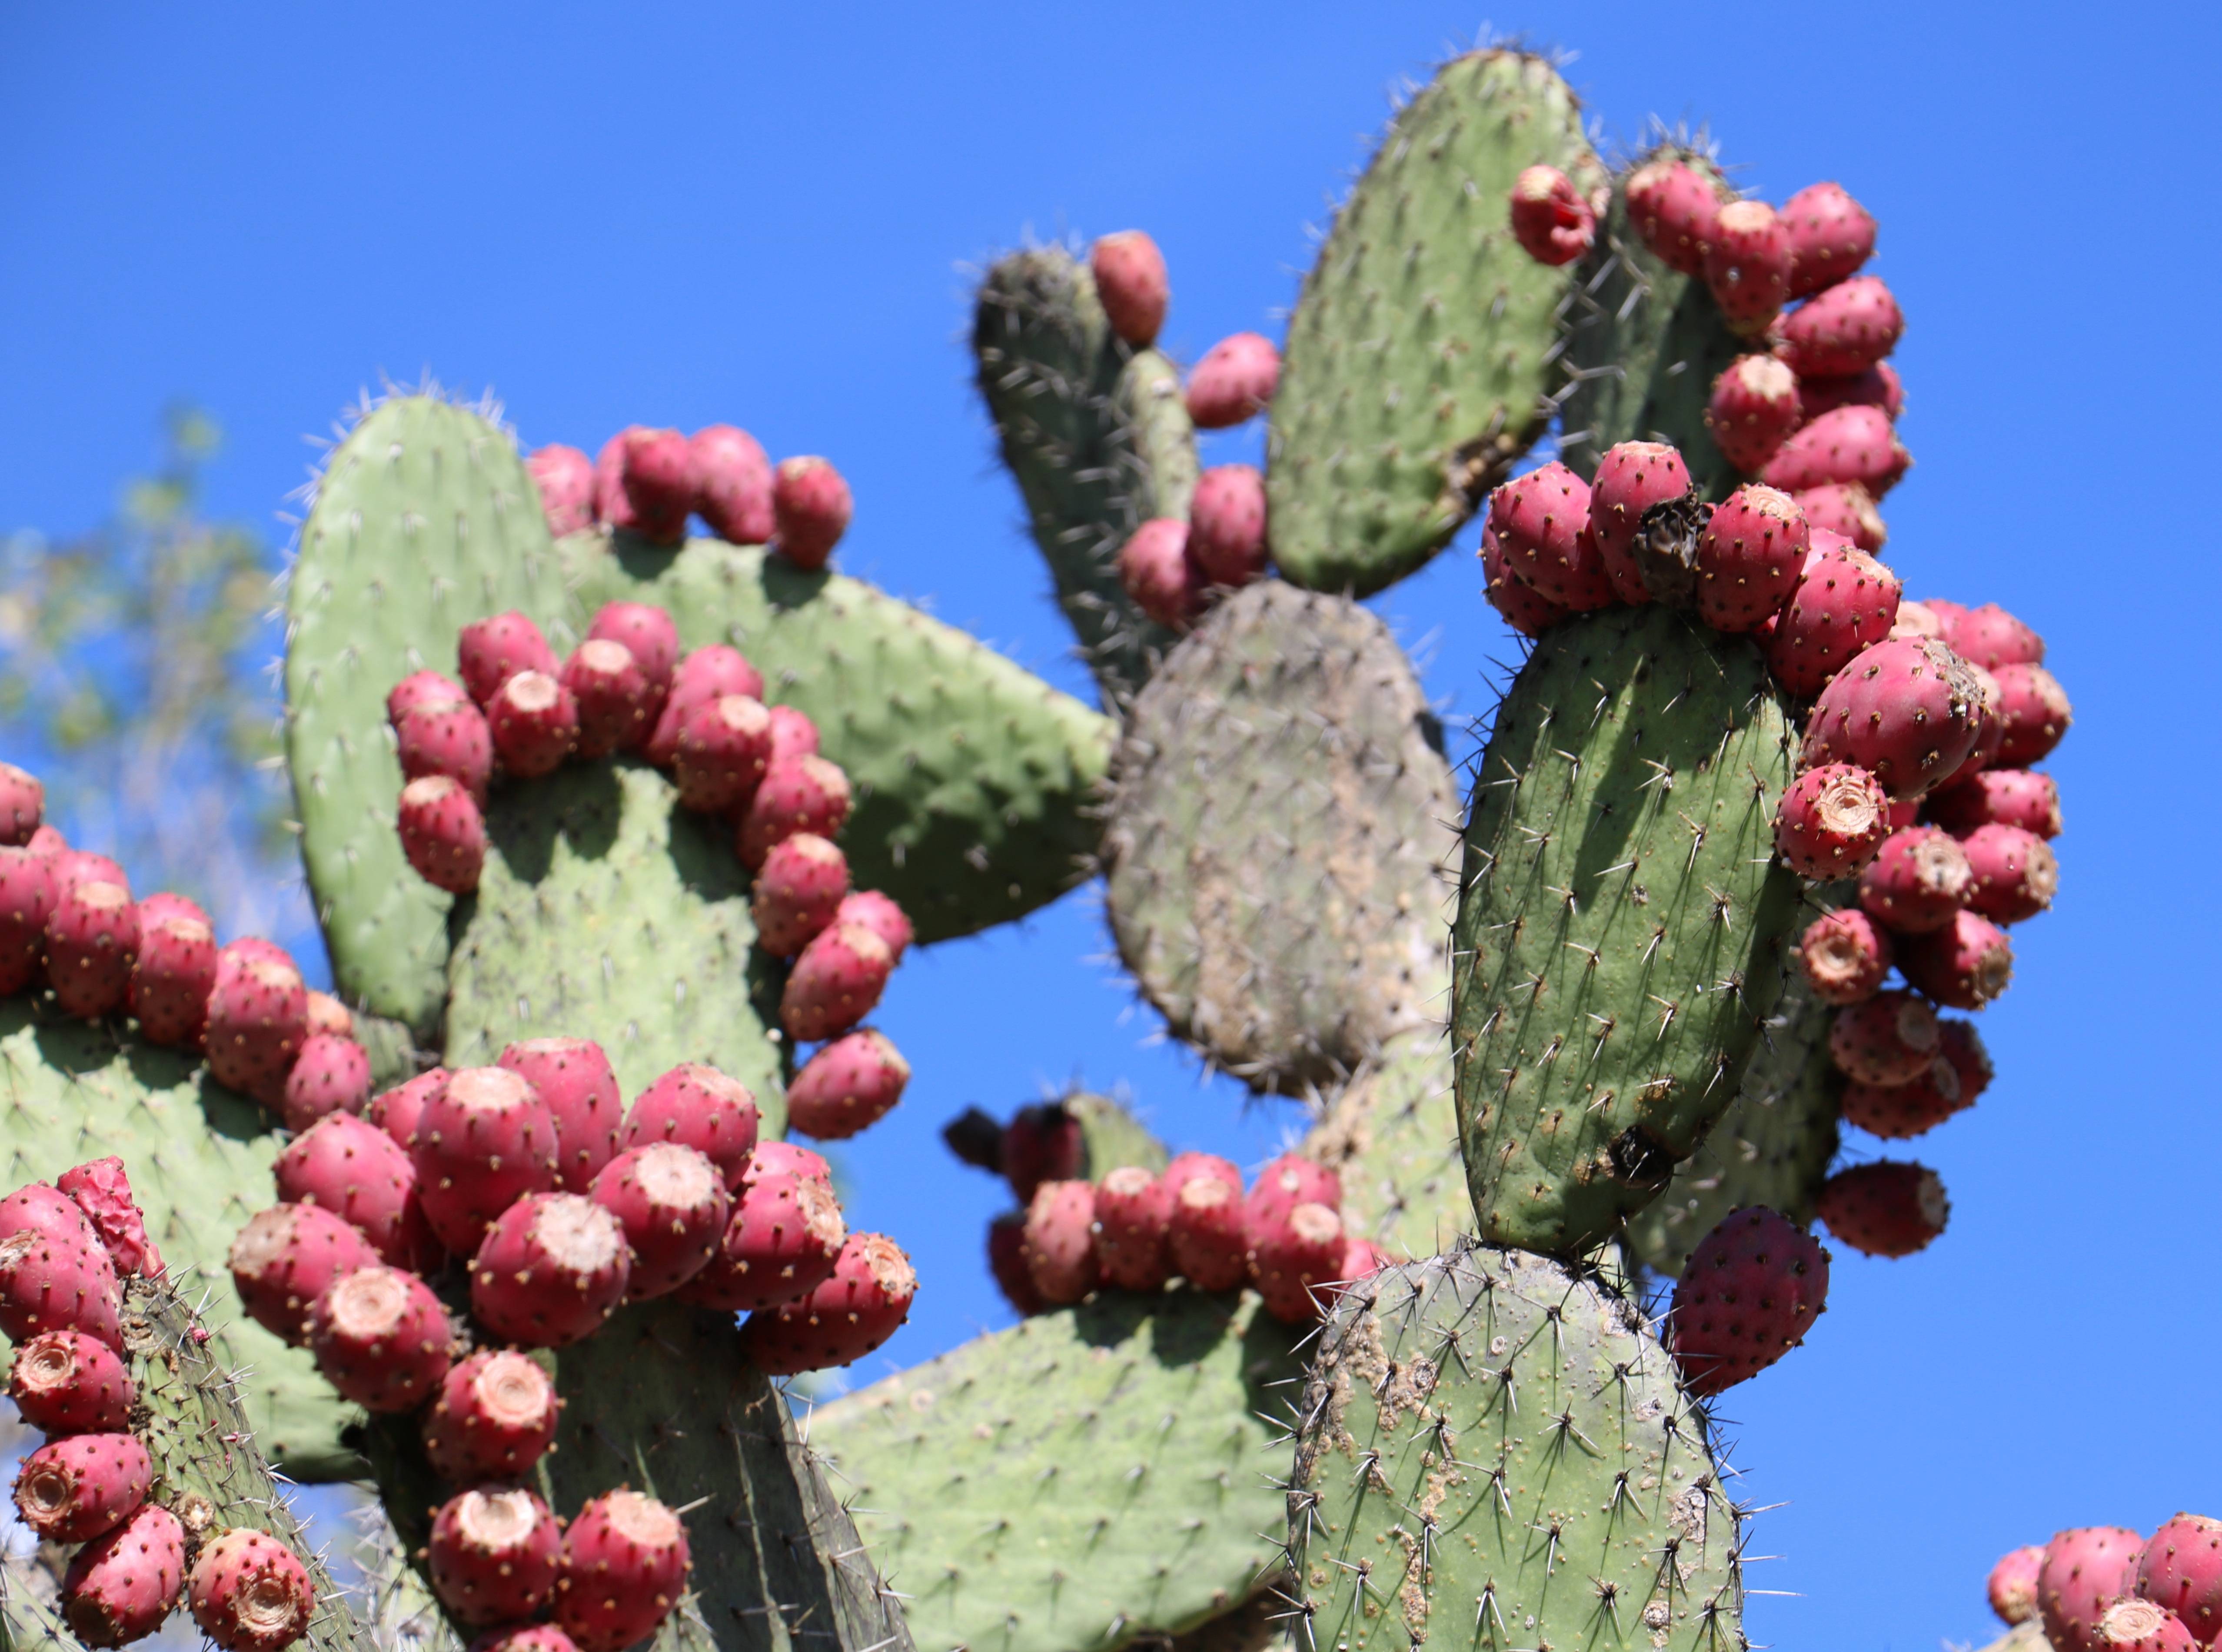 Съедобные плоды кактуса (опунция инжирная) — что это такое и как есть фиги?